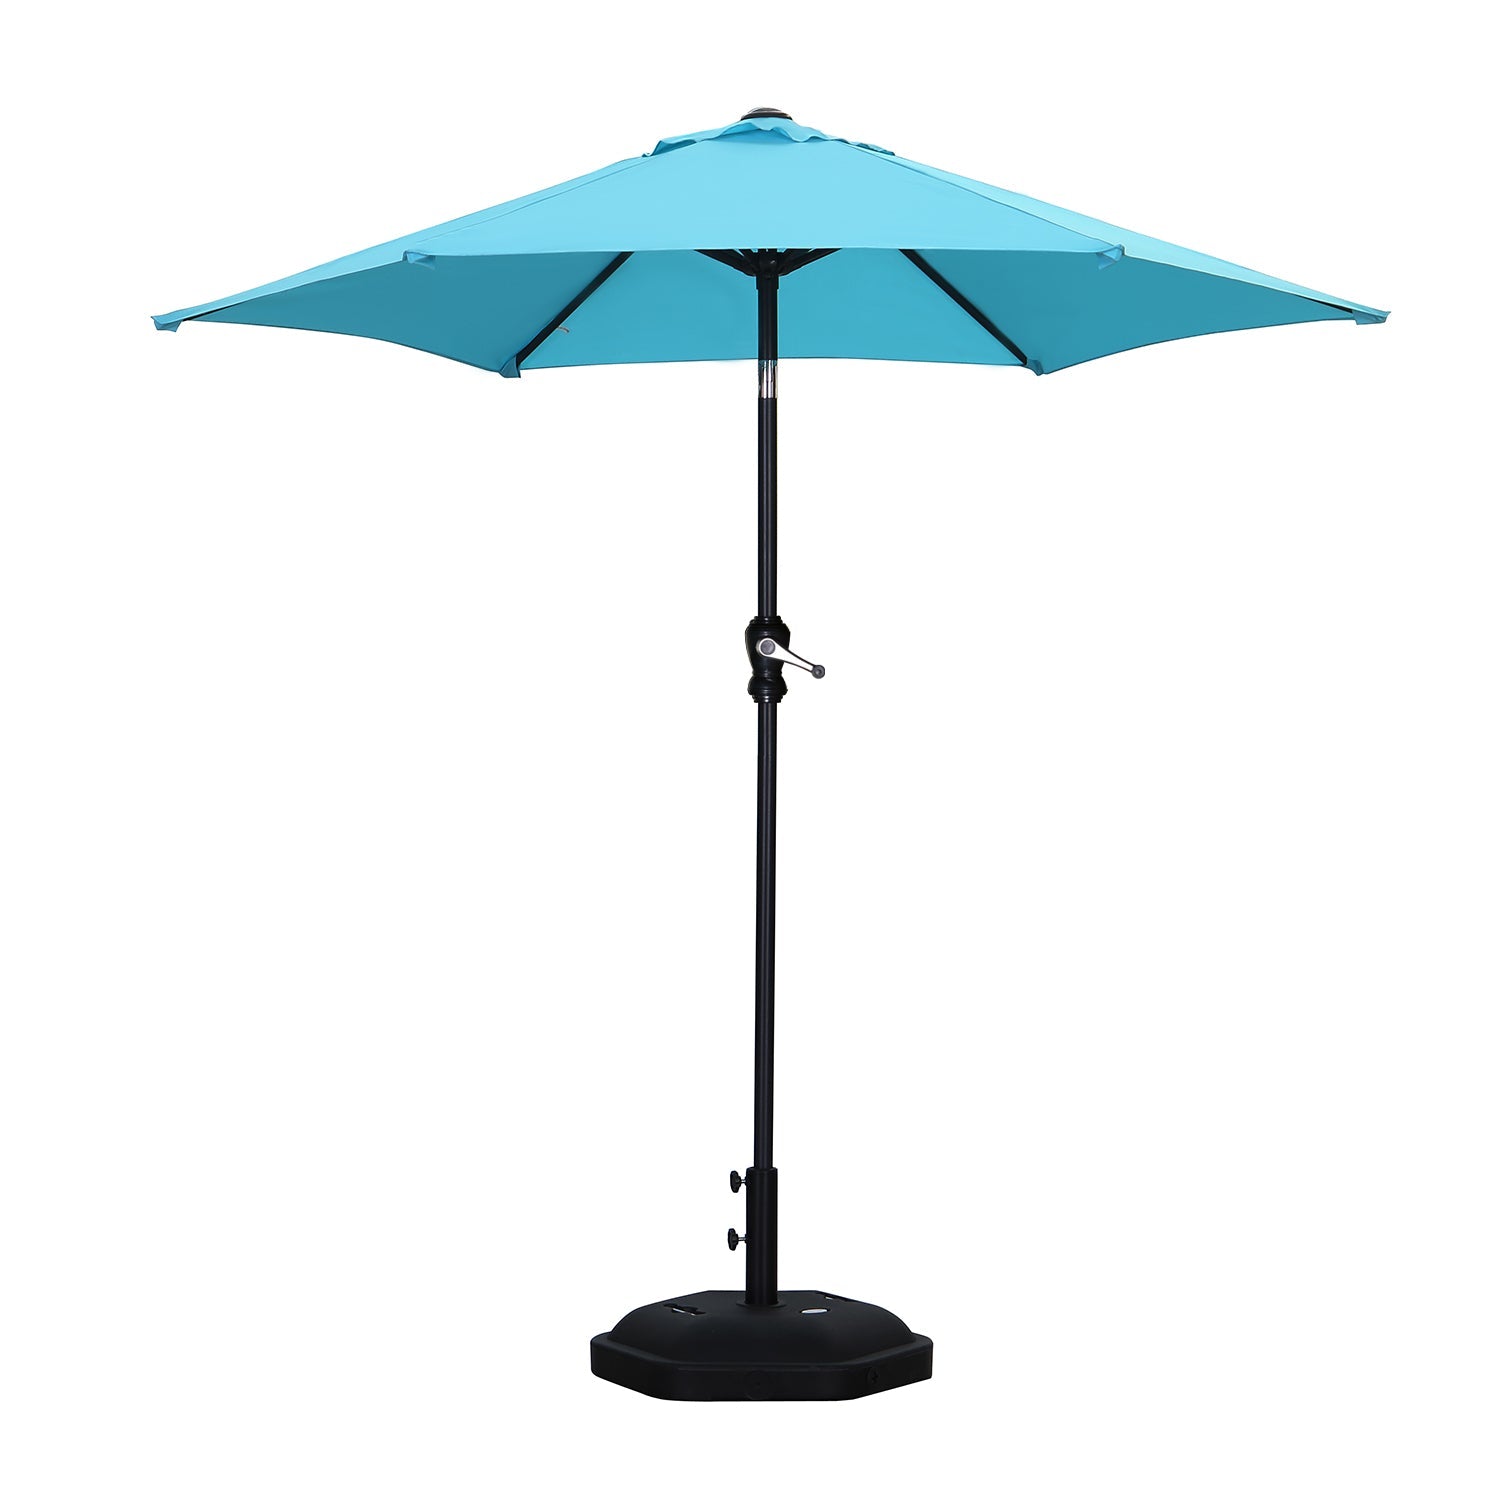 7.5FT Patio Umbrella Outdoor Table Umbrella,Market Umbrella with Push Button Tilt and Crank for Garden, Lawn, Deck, Backyard & Pool